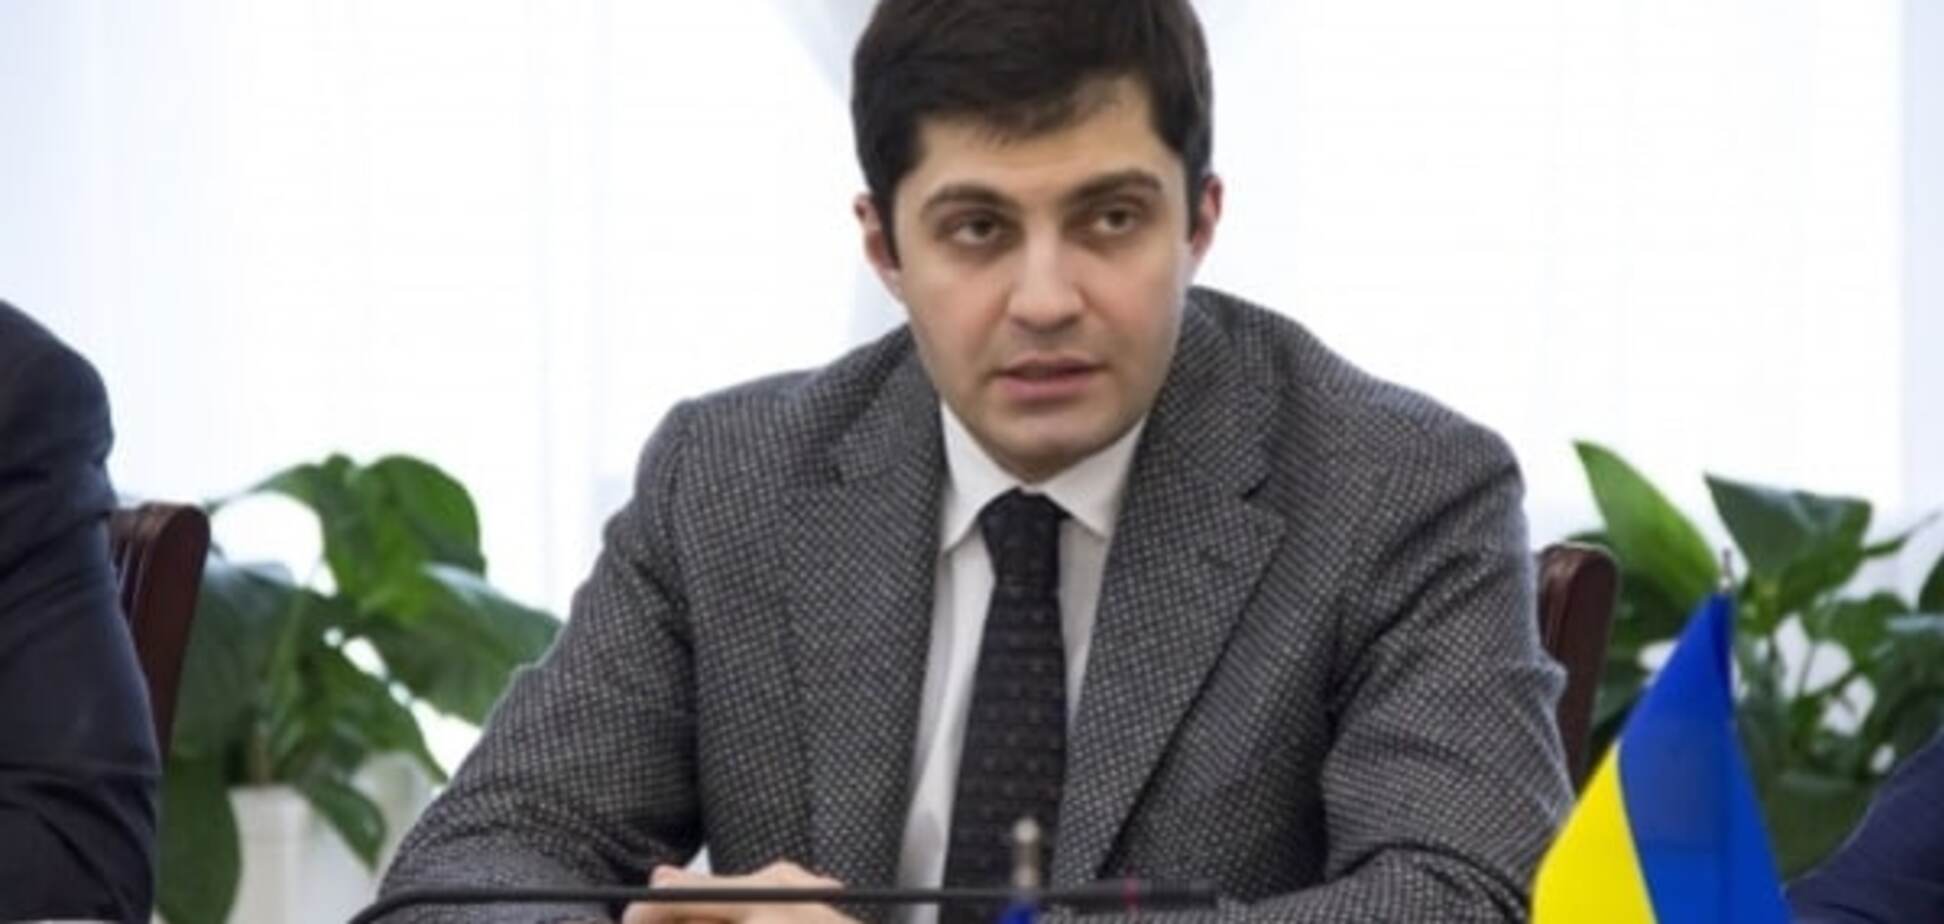 Сакварелідзе пояснив, чому на антикорупційному форумі не було Яценюка